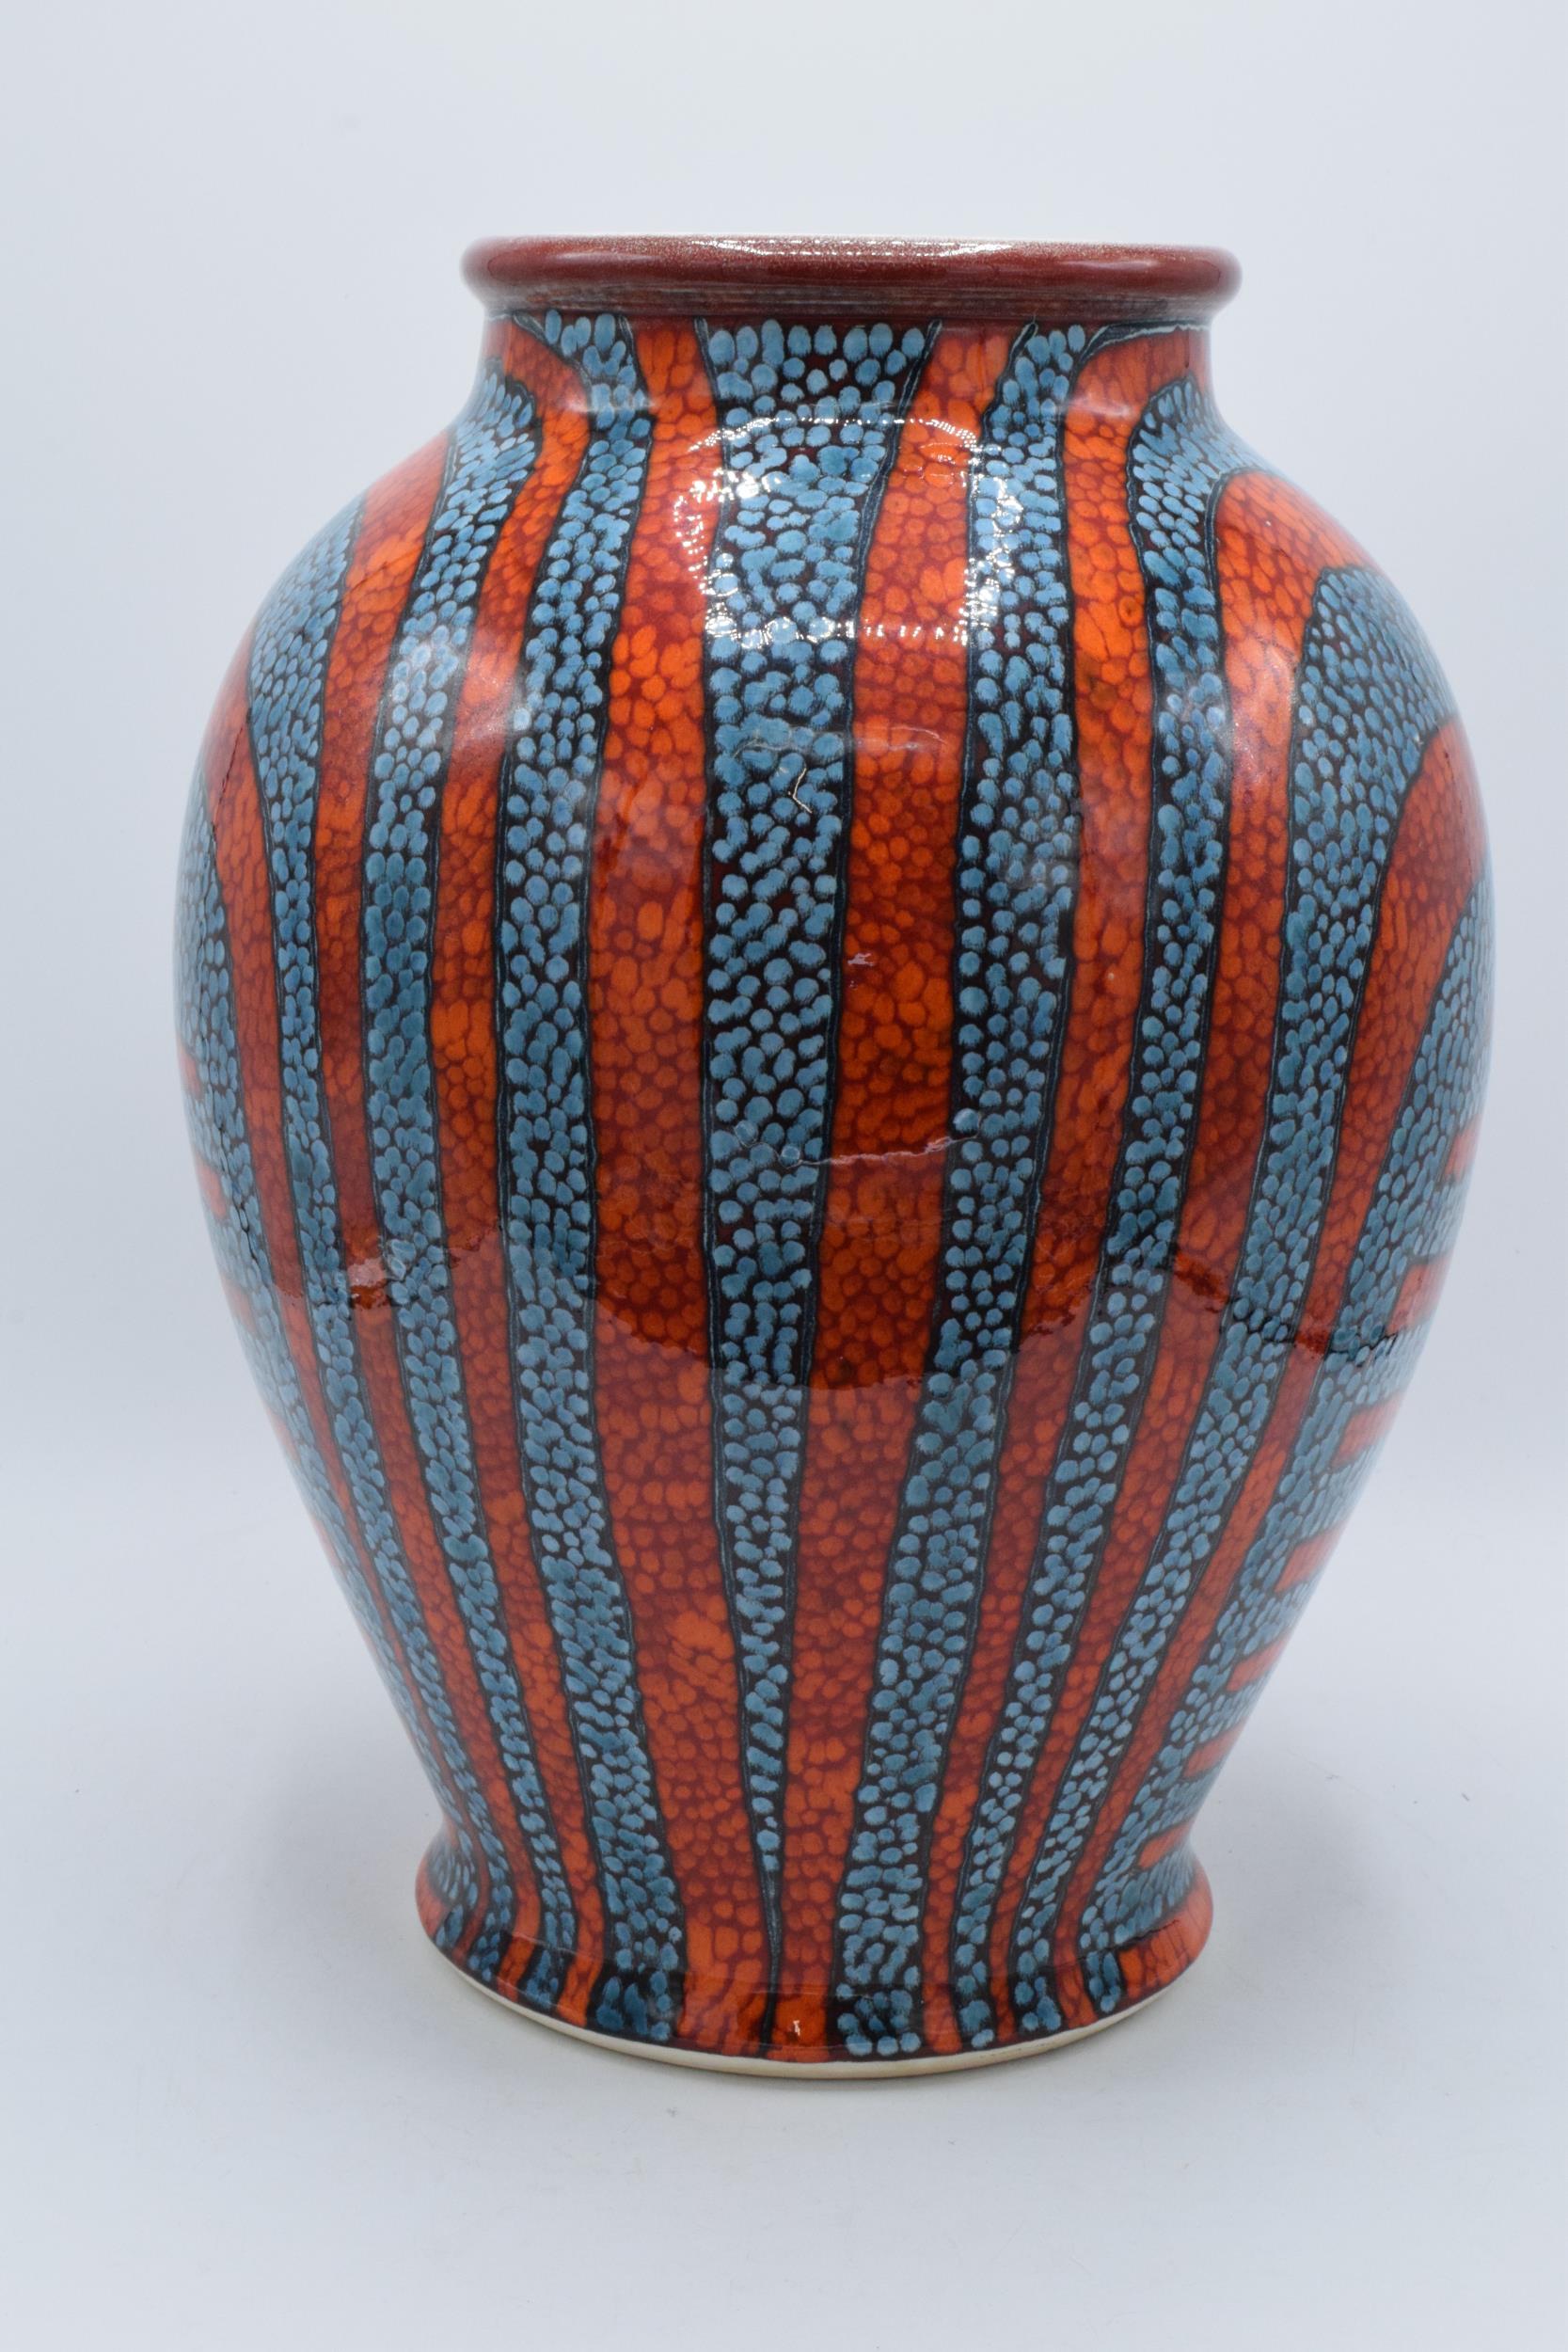 Large Poole Pottery Studio bulbous vase in the Tutankhamun design signed by Nicola Massarella - Image 2 of 3